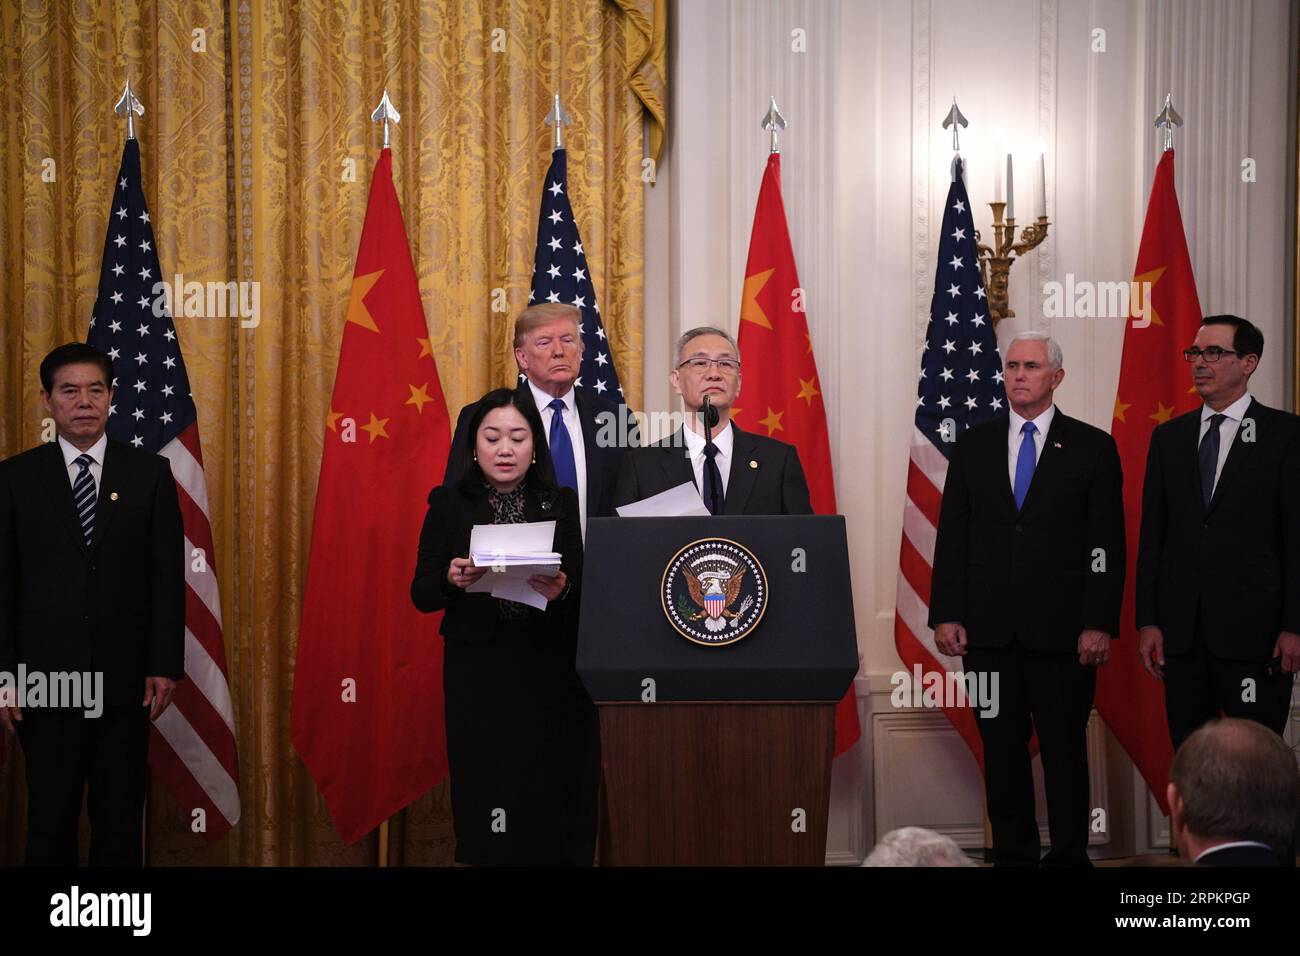 200115 -- WASHINGTON D.C., 15. Januar 2020 -- der chinesische Vize-Ministerpräsident Liu He, der auch Mitglied des Politbüros des Zentralkomitees der Kommunistischen Partei Chinas und Chef der chinesischen Seite des umfassenden Wirtschaftsdialogs zwischen China und den USA ist, spricht während der Phase-1-Unterzeichnung des Handelsabkommens zwischen China und den USA, die am 15. Januar 2020 im East Room des Weißen Hauses in Washington D.C. in den Vereinigten Staaten stattfand. USA-WASHINGTON D.C.-CHINA-USA PHASE-1-HANDELSABKOMMEN: LiuxJie PUBLICATIONxNOTxINxCHN Stockfoto